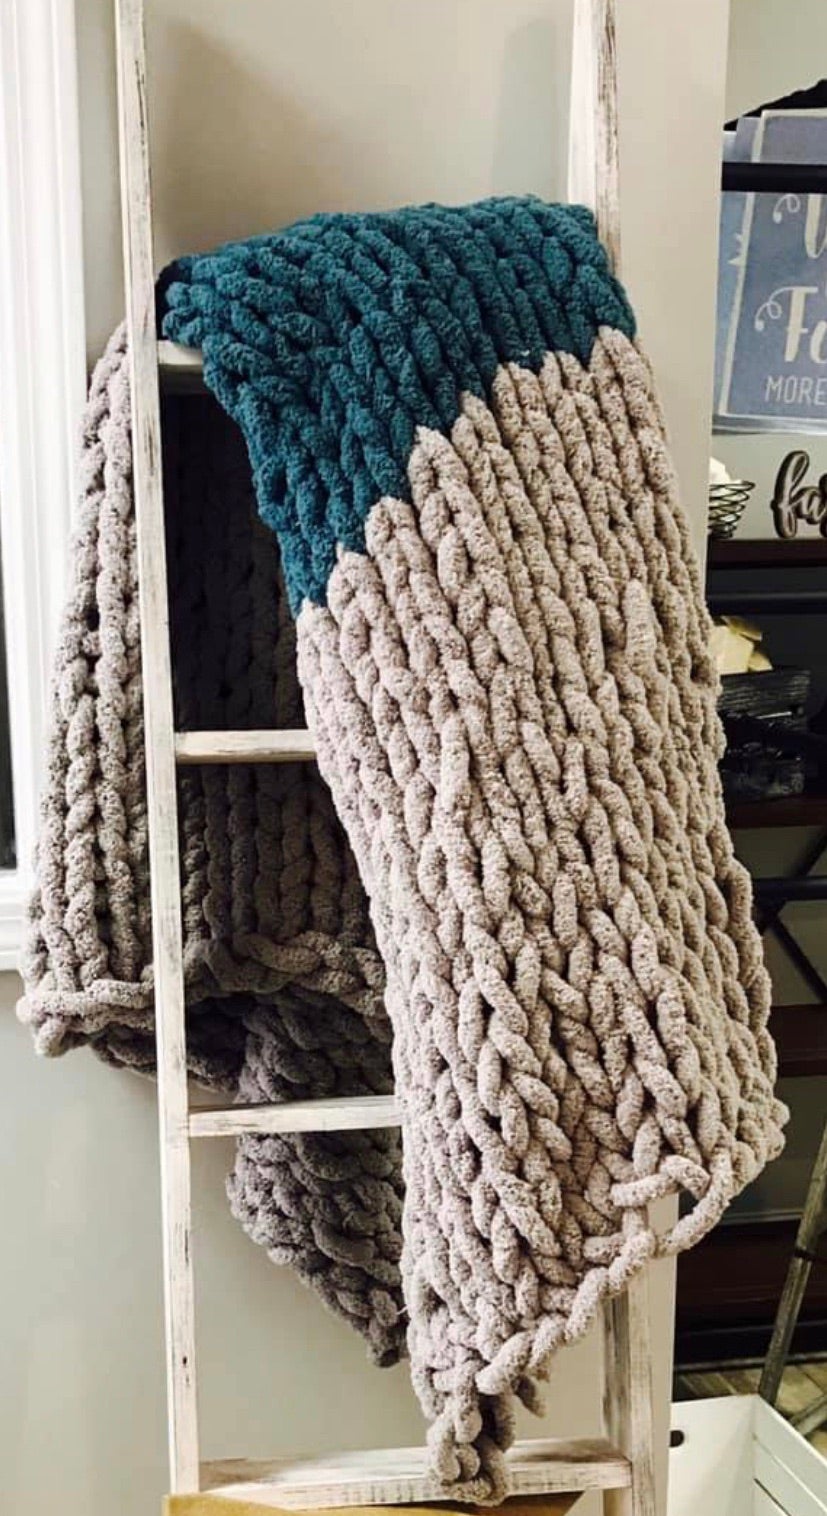 Chunky Knit Blanket DIY KITS for Adults Make Your Own Super -   Chunky  knit blanket diy, Chunky knit blanket, Crochet blanket kit